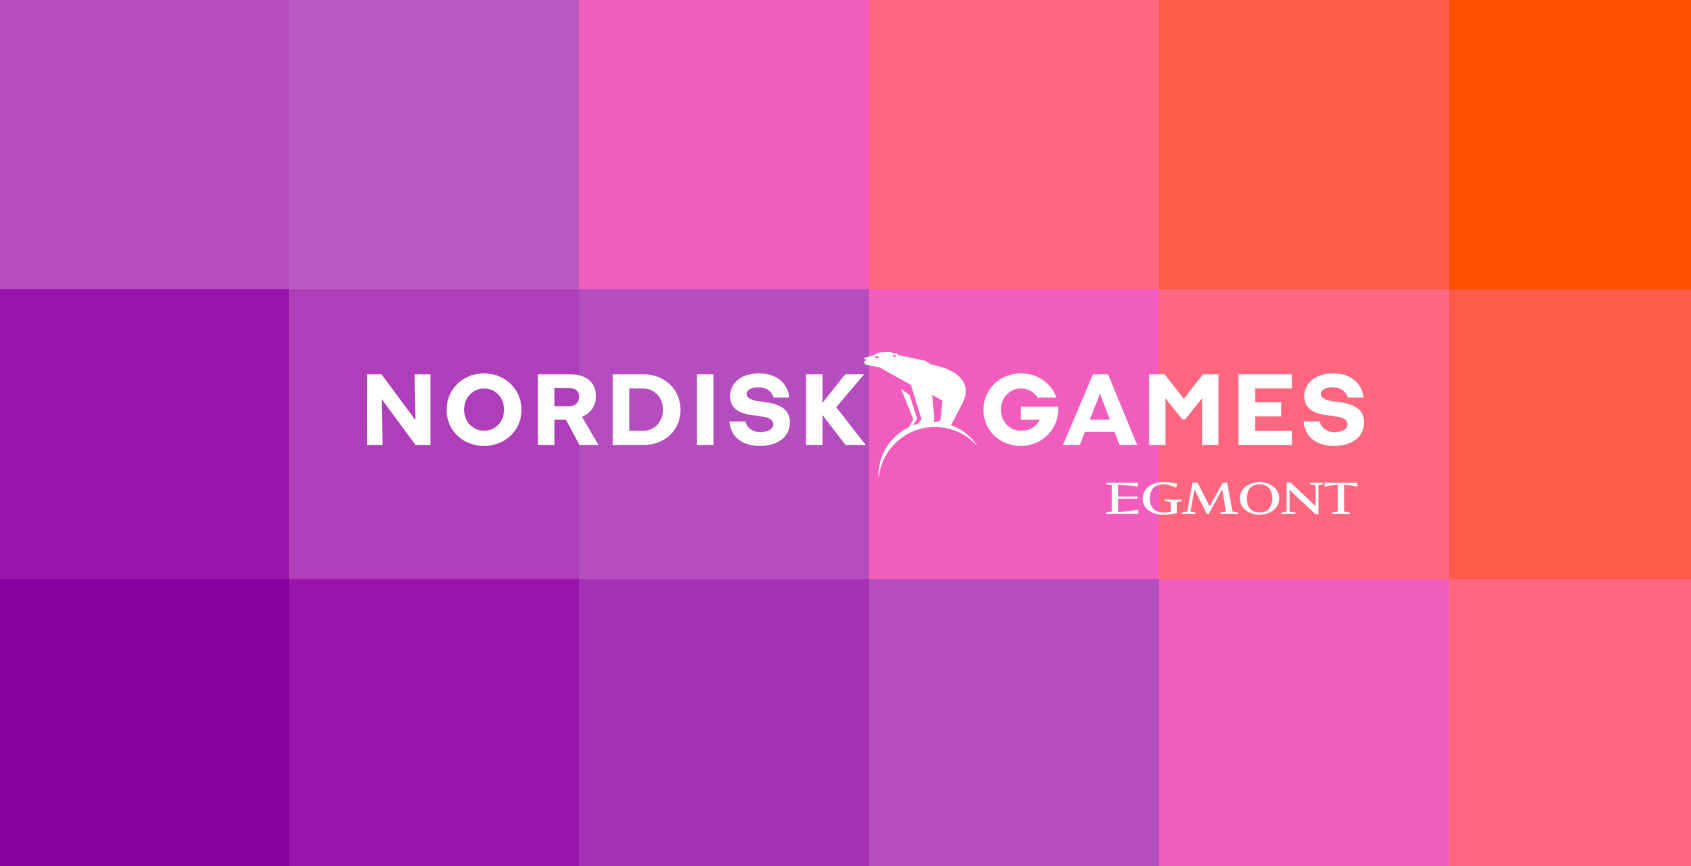 Les créateurs d'Until Down ont rejoint la famille Nordisk Games. Maintenant, ils sont avec les auteurs de Just Cause